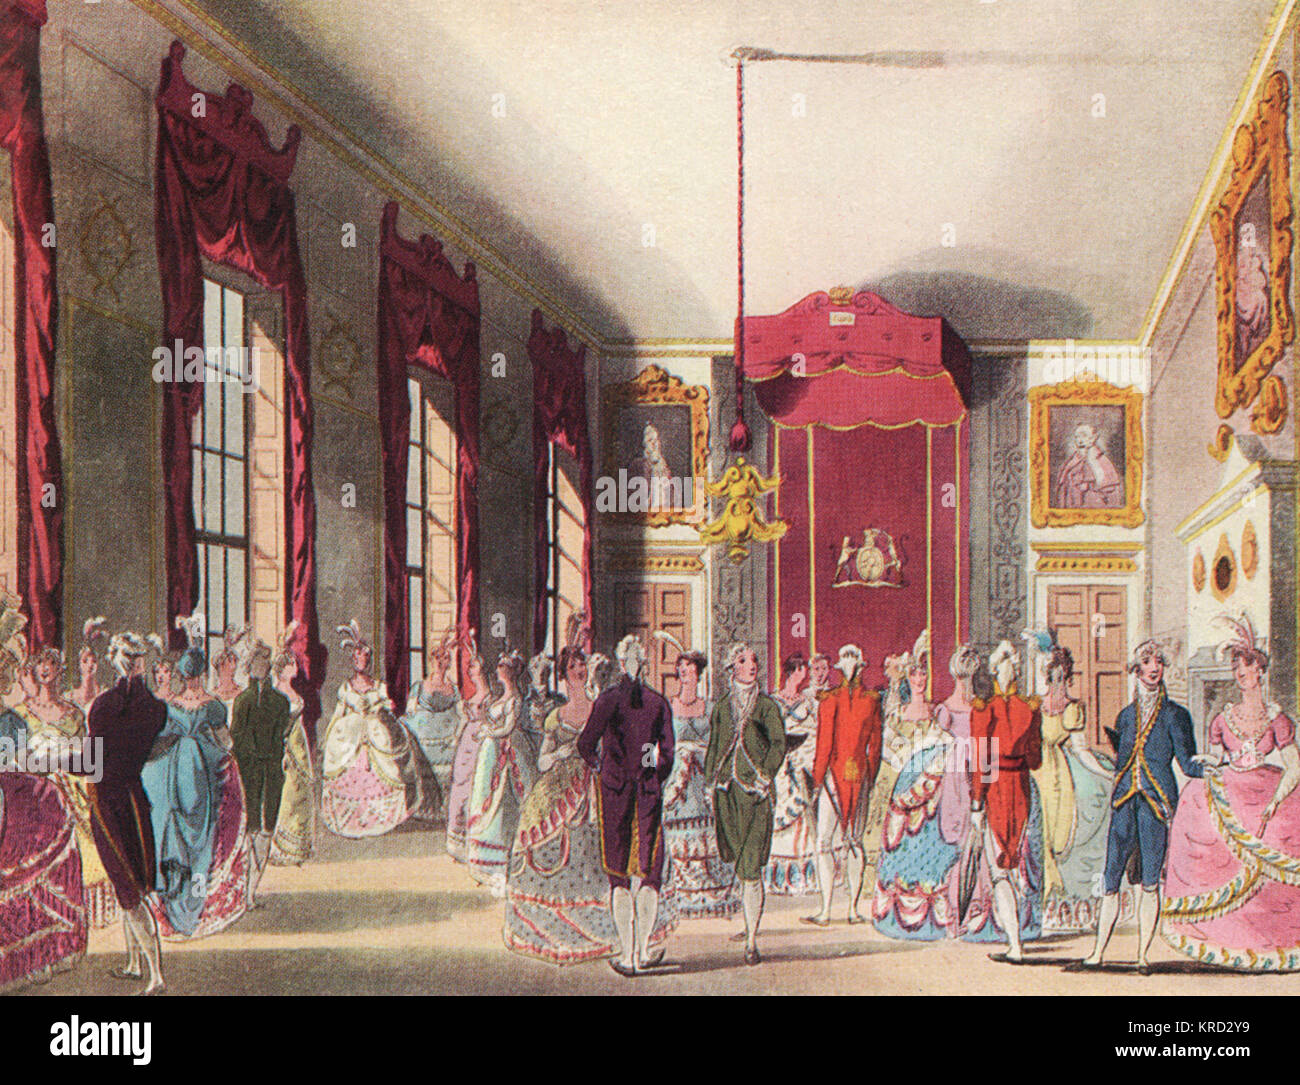 Ein Salon am St. James's Palace während der Regierungszeit von König George III, wenn der Adel förmlich vor Gericht vorgelegt werden, damit ihren Platz in der "Gesellschaft". Datum: 1750 Stockfoto